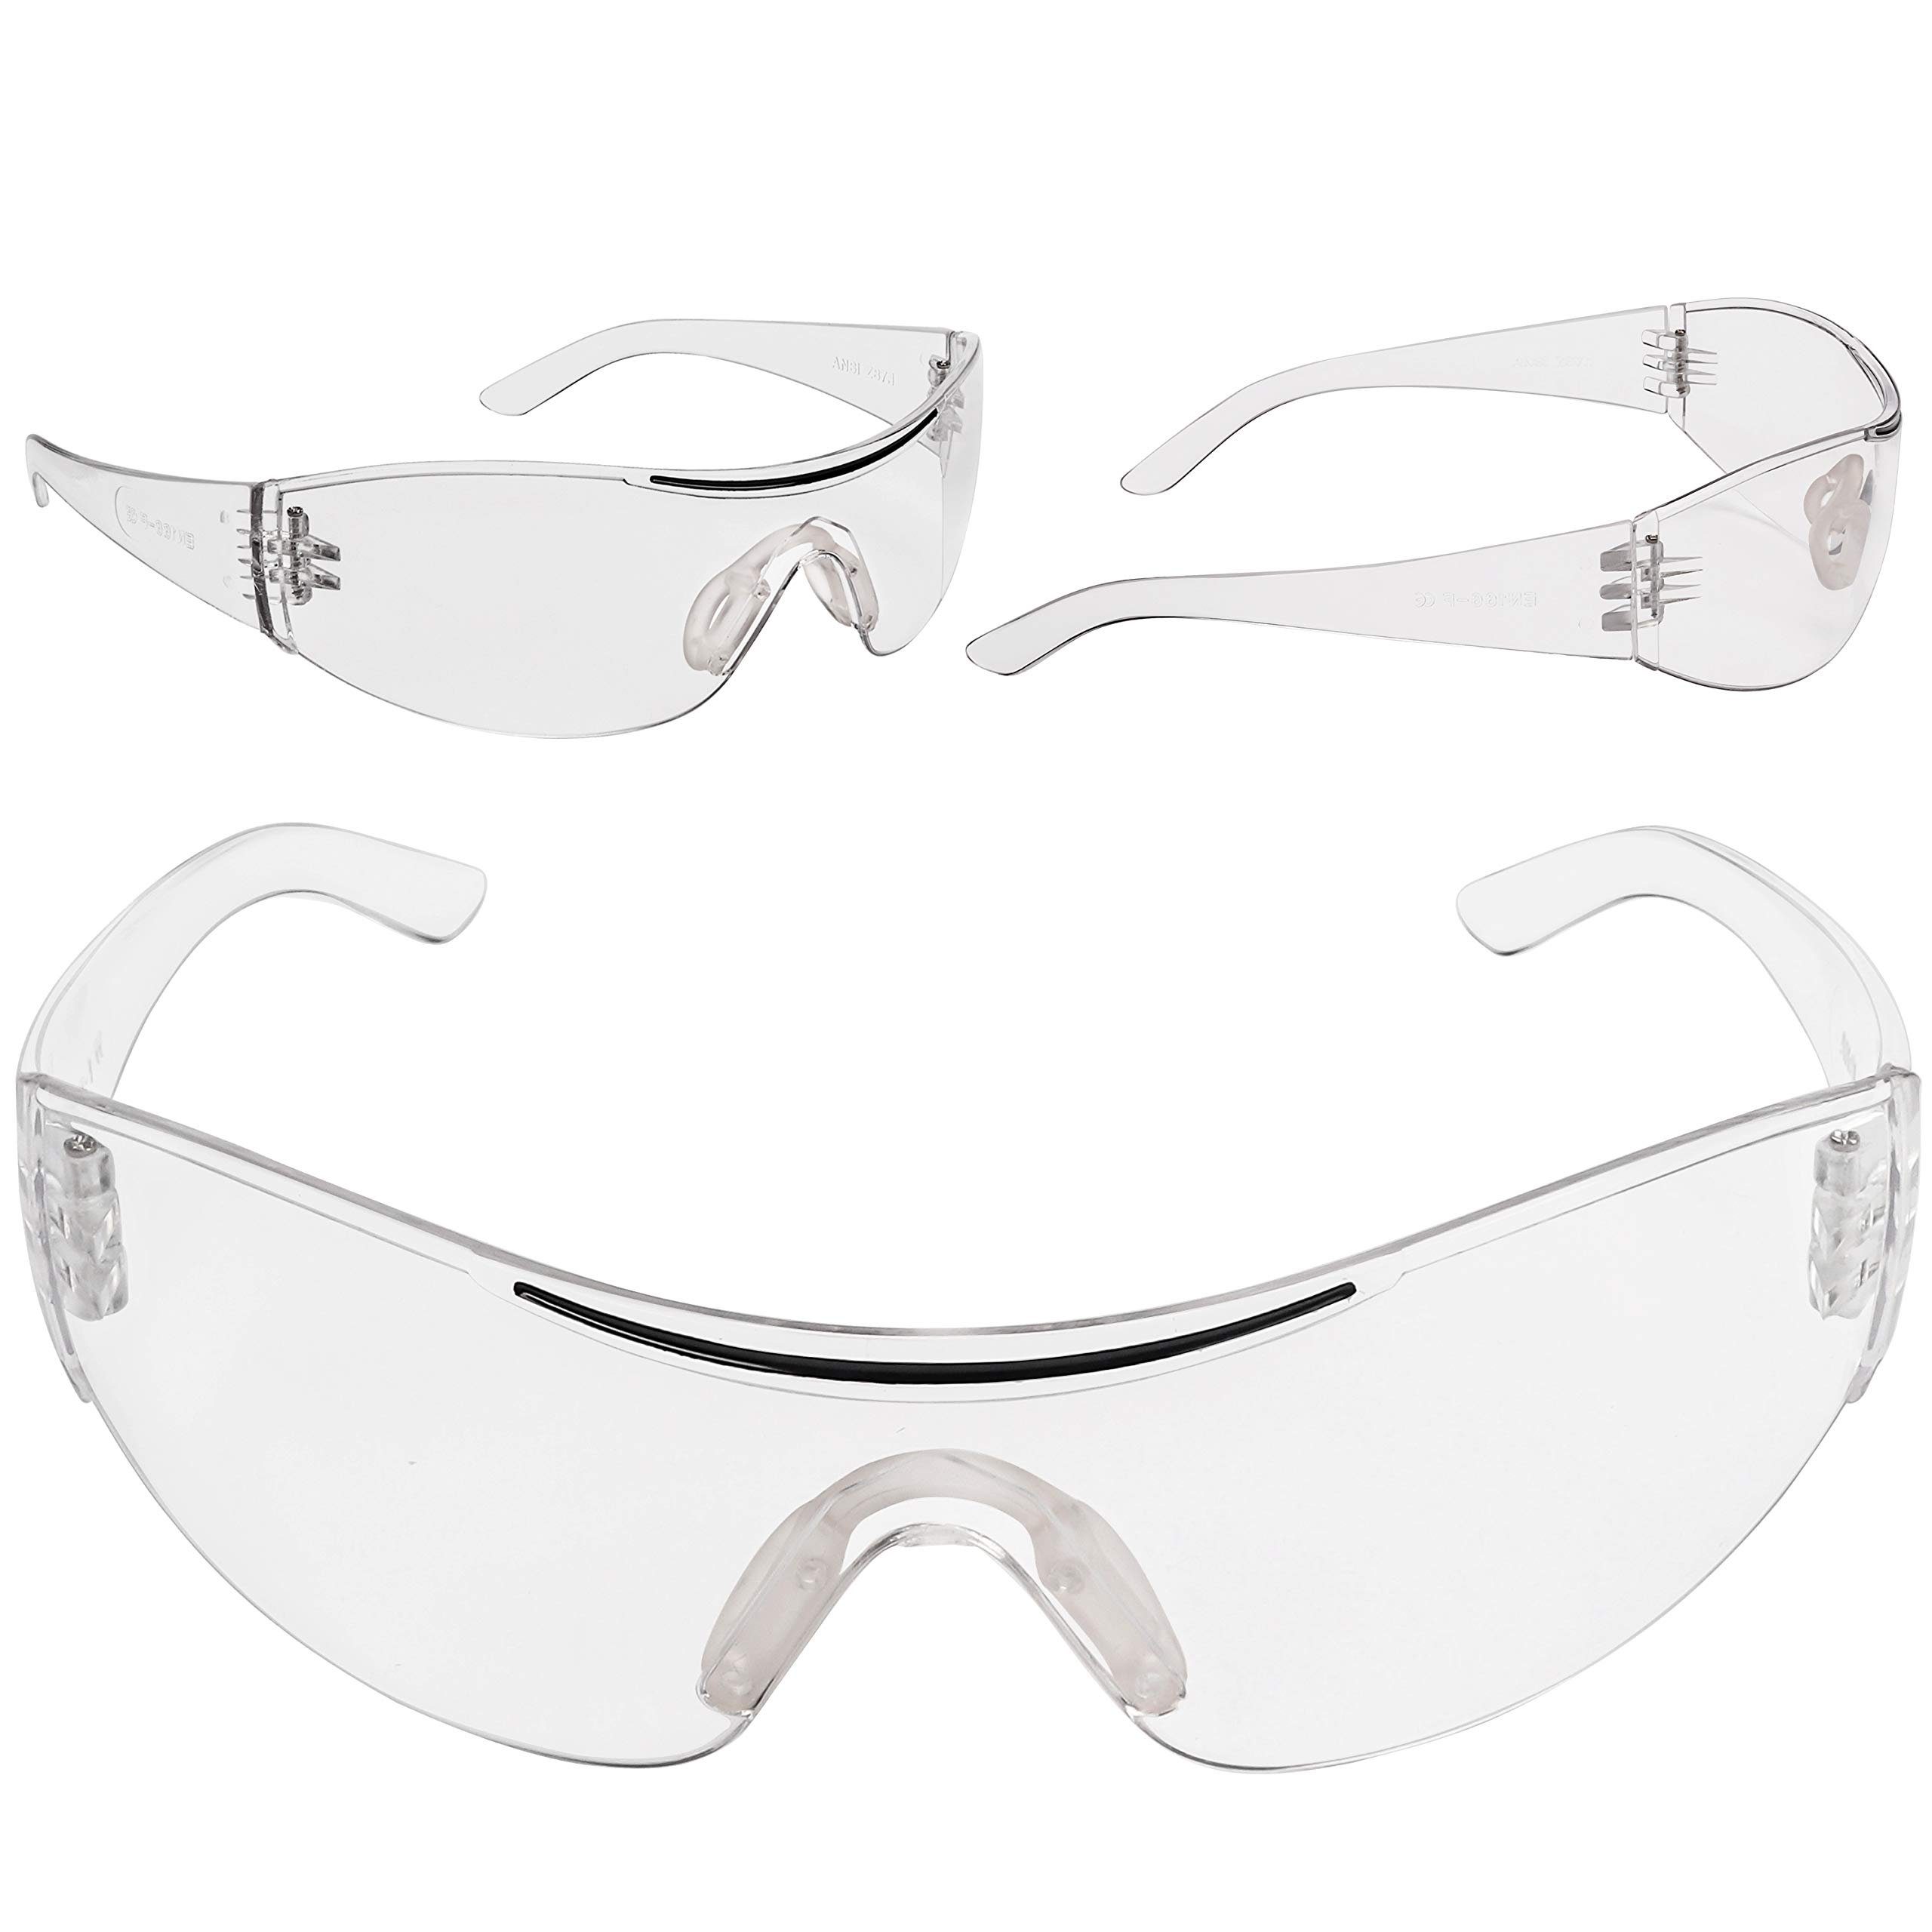 24er Gummieinsatz für mit 24er mit Pack Kurtzy sicheren Pack Augenschutz Schutzbrillen Schutzbrillen für sicheren Gummi Arbeitsschutzbrille Augenschutz,